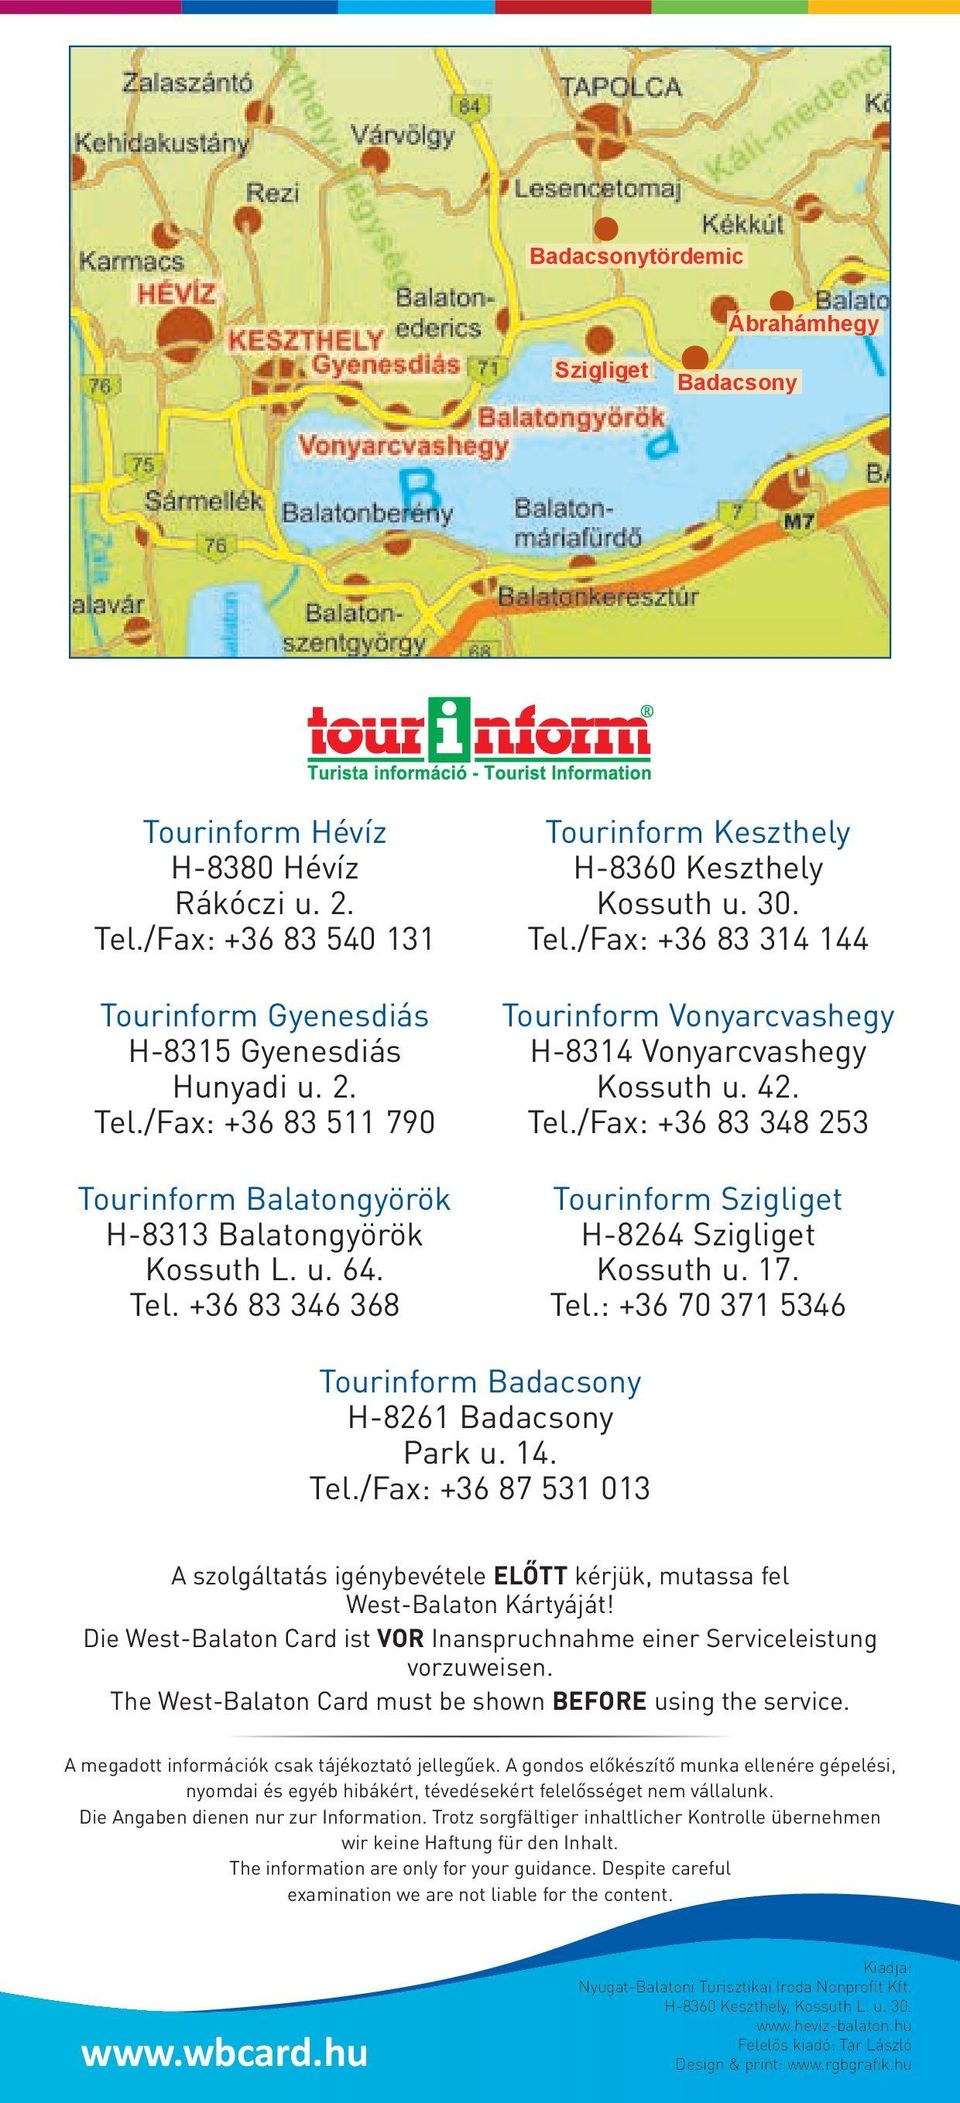 17. Tel.: +36 70 371 5346 Tourinform Badacsony H-8261 Badacsony Park u. 14. Tel./Fax: +36 87 531 013 A szolgáltatás igénybevétele előtt kérjük, mutassa fel West-Balaton Kártyáját!